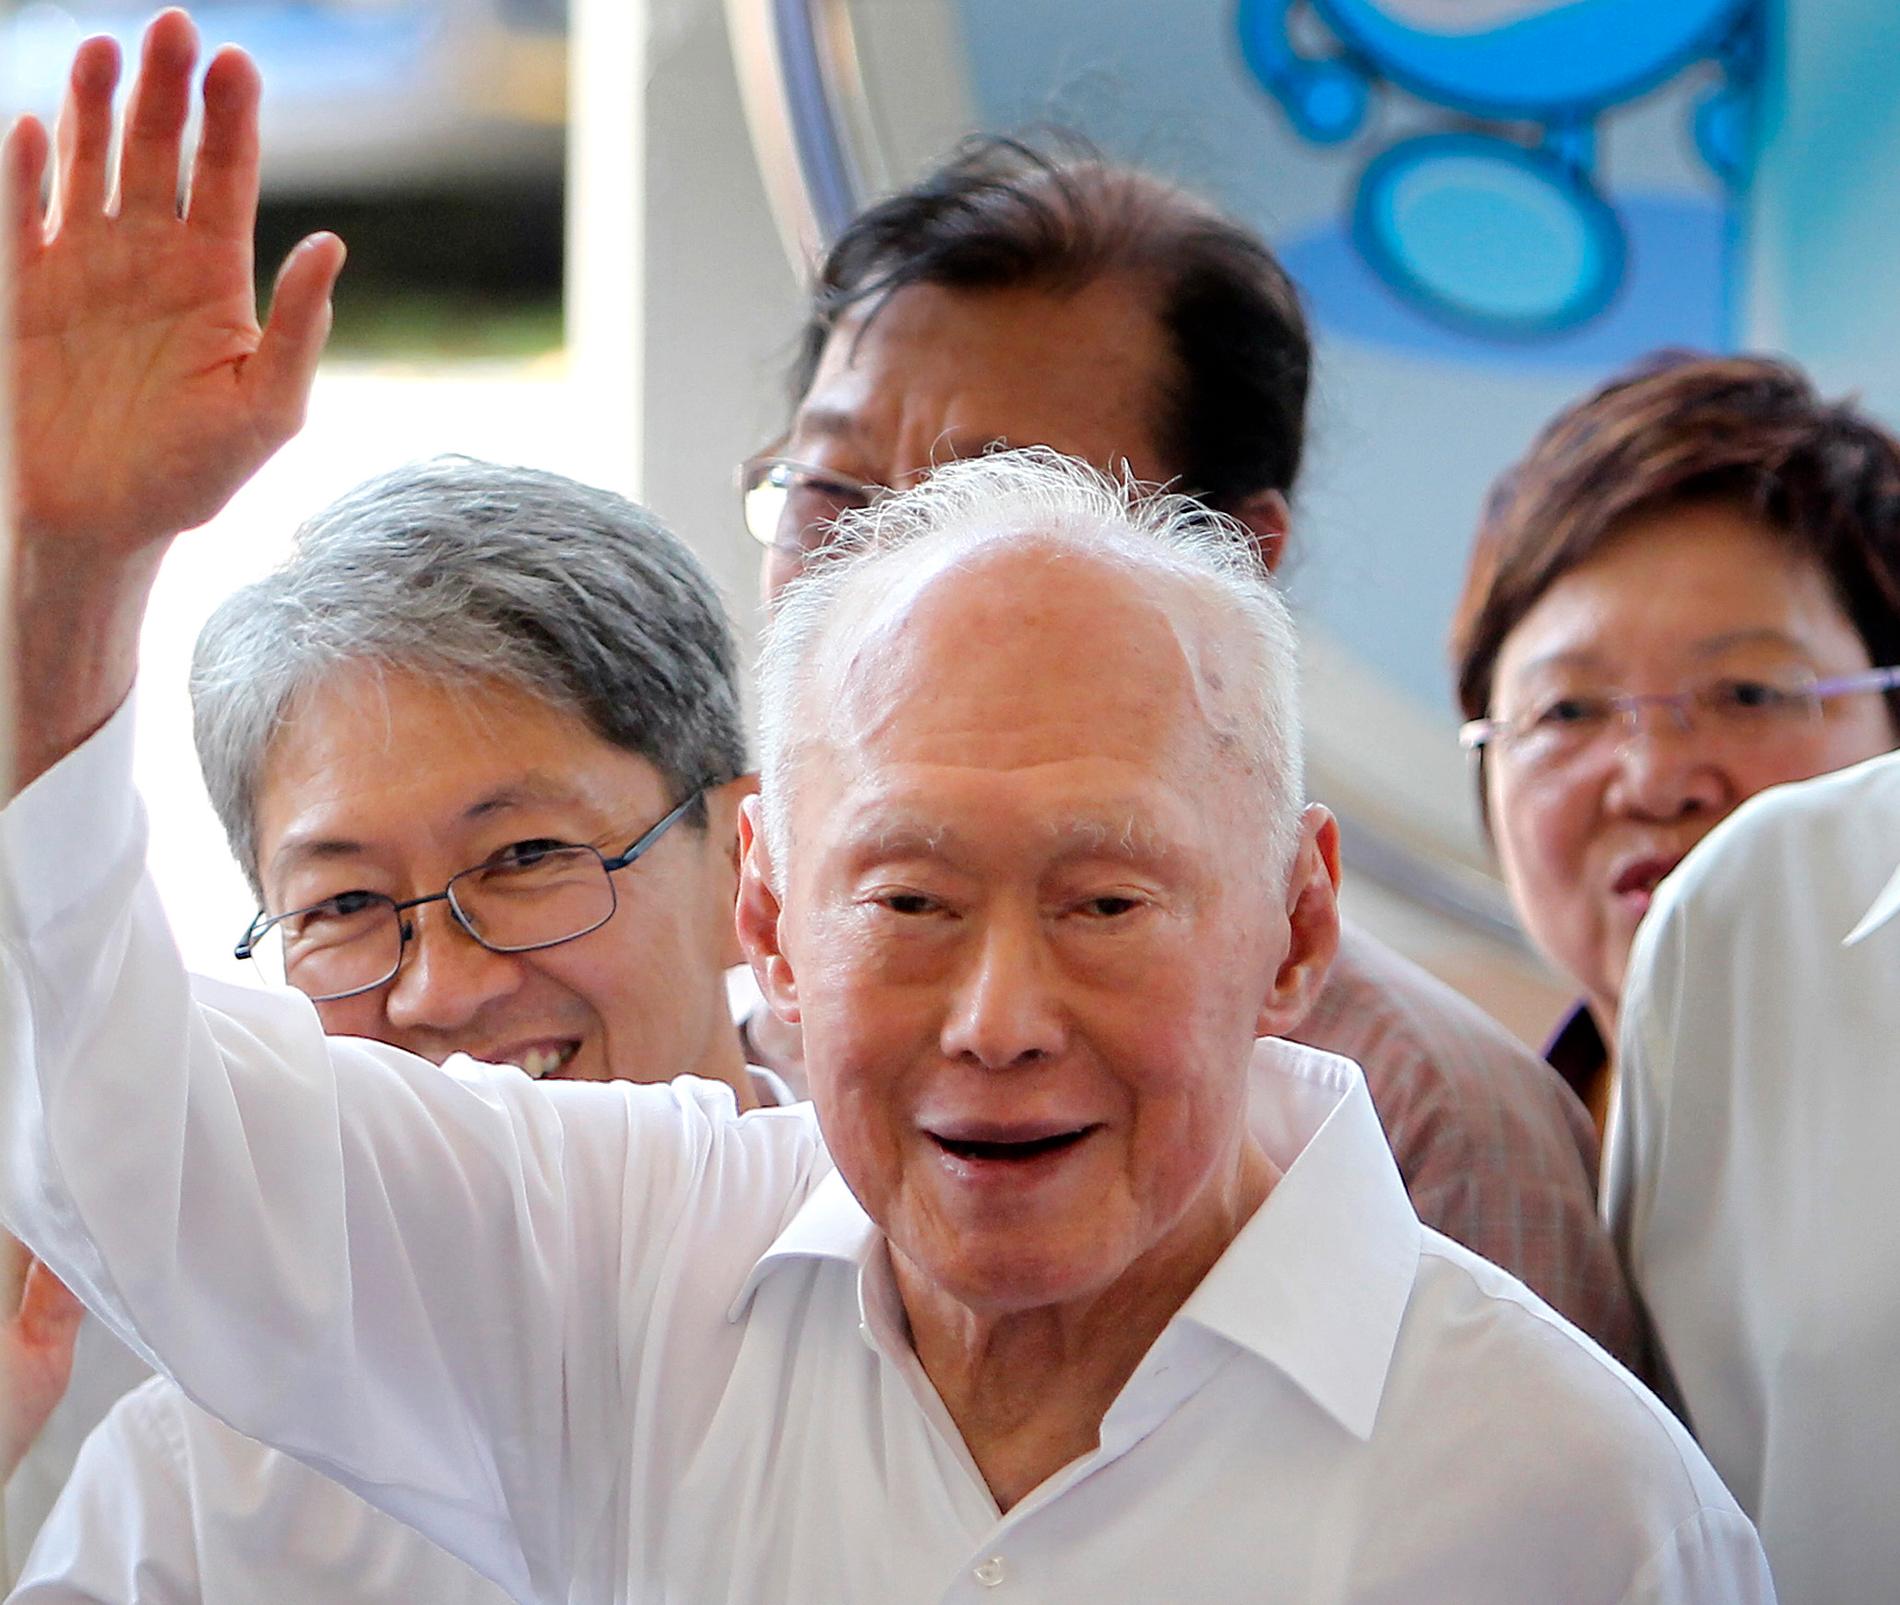 Lee Kuan Yew Singapores premiärminister i 31 år och arbetade för regeringen ända fram till 2011.
Enligt BBC var han den man som låg bakom Singapores förvandling, men han var också kritiserad för sitt hårda grepp om makten.